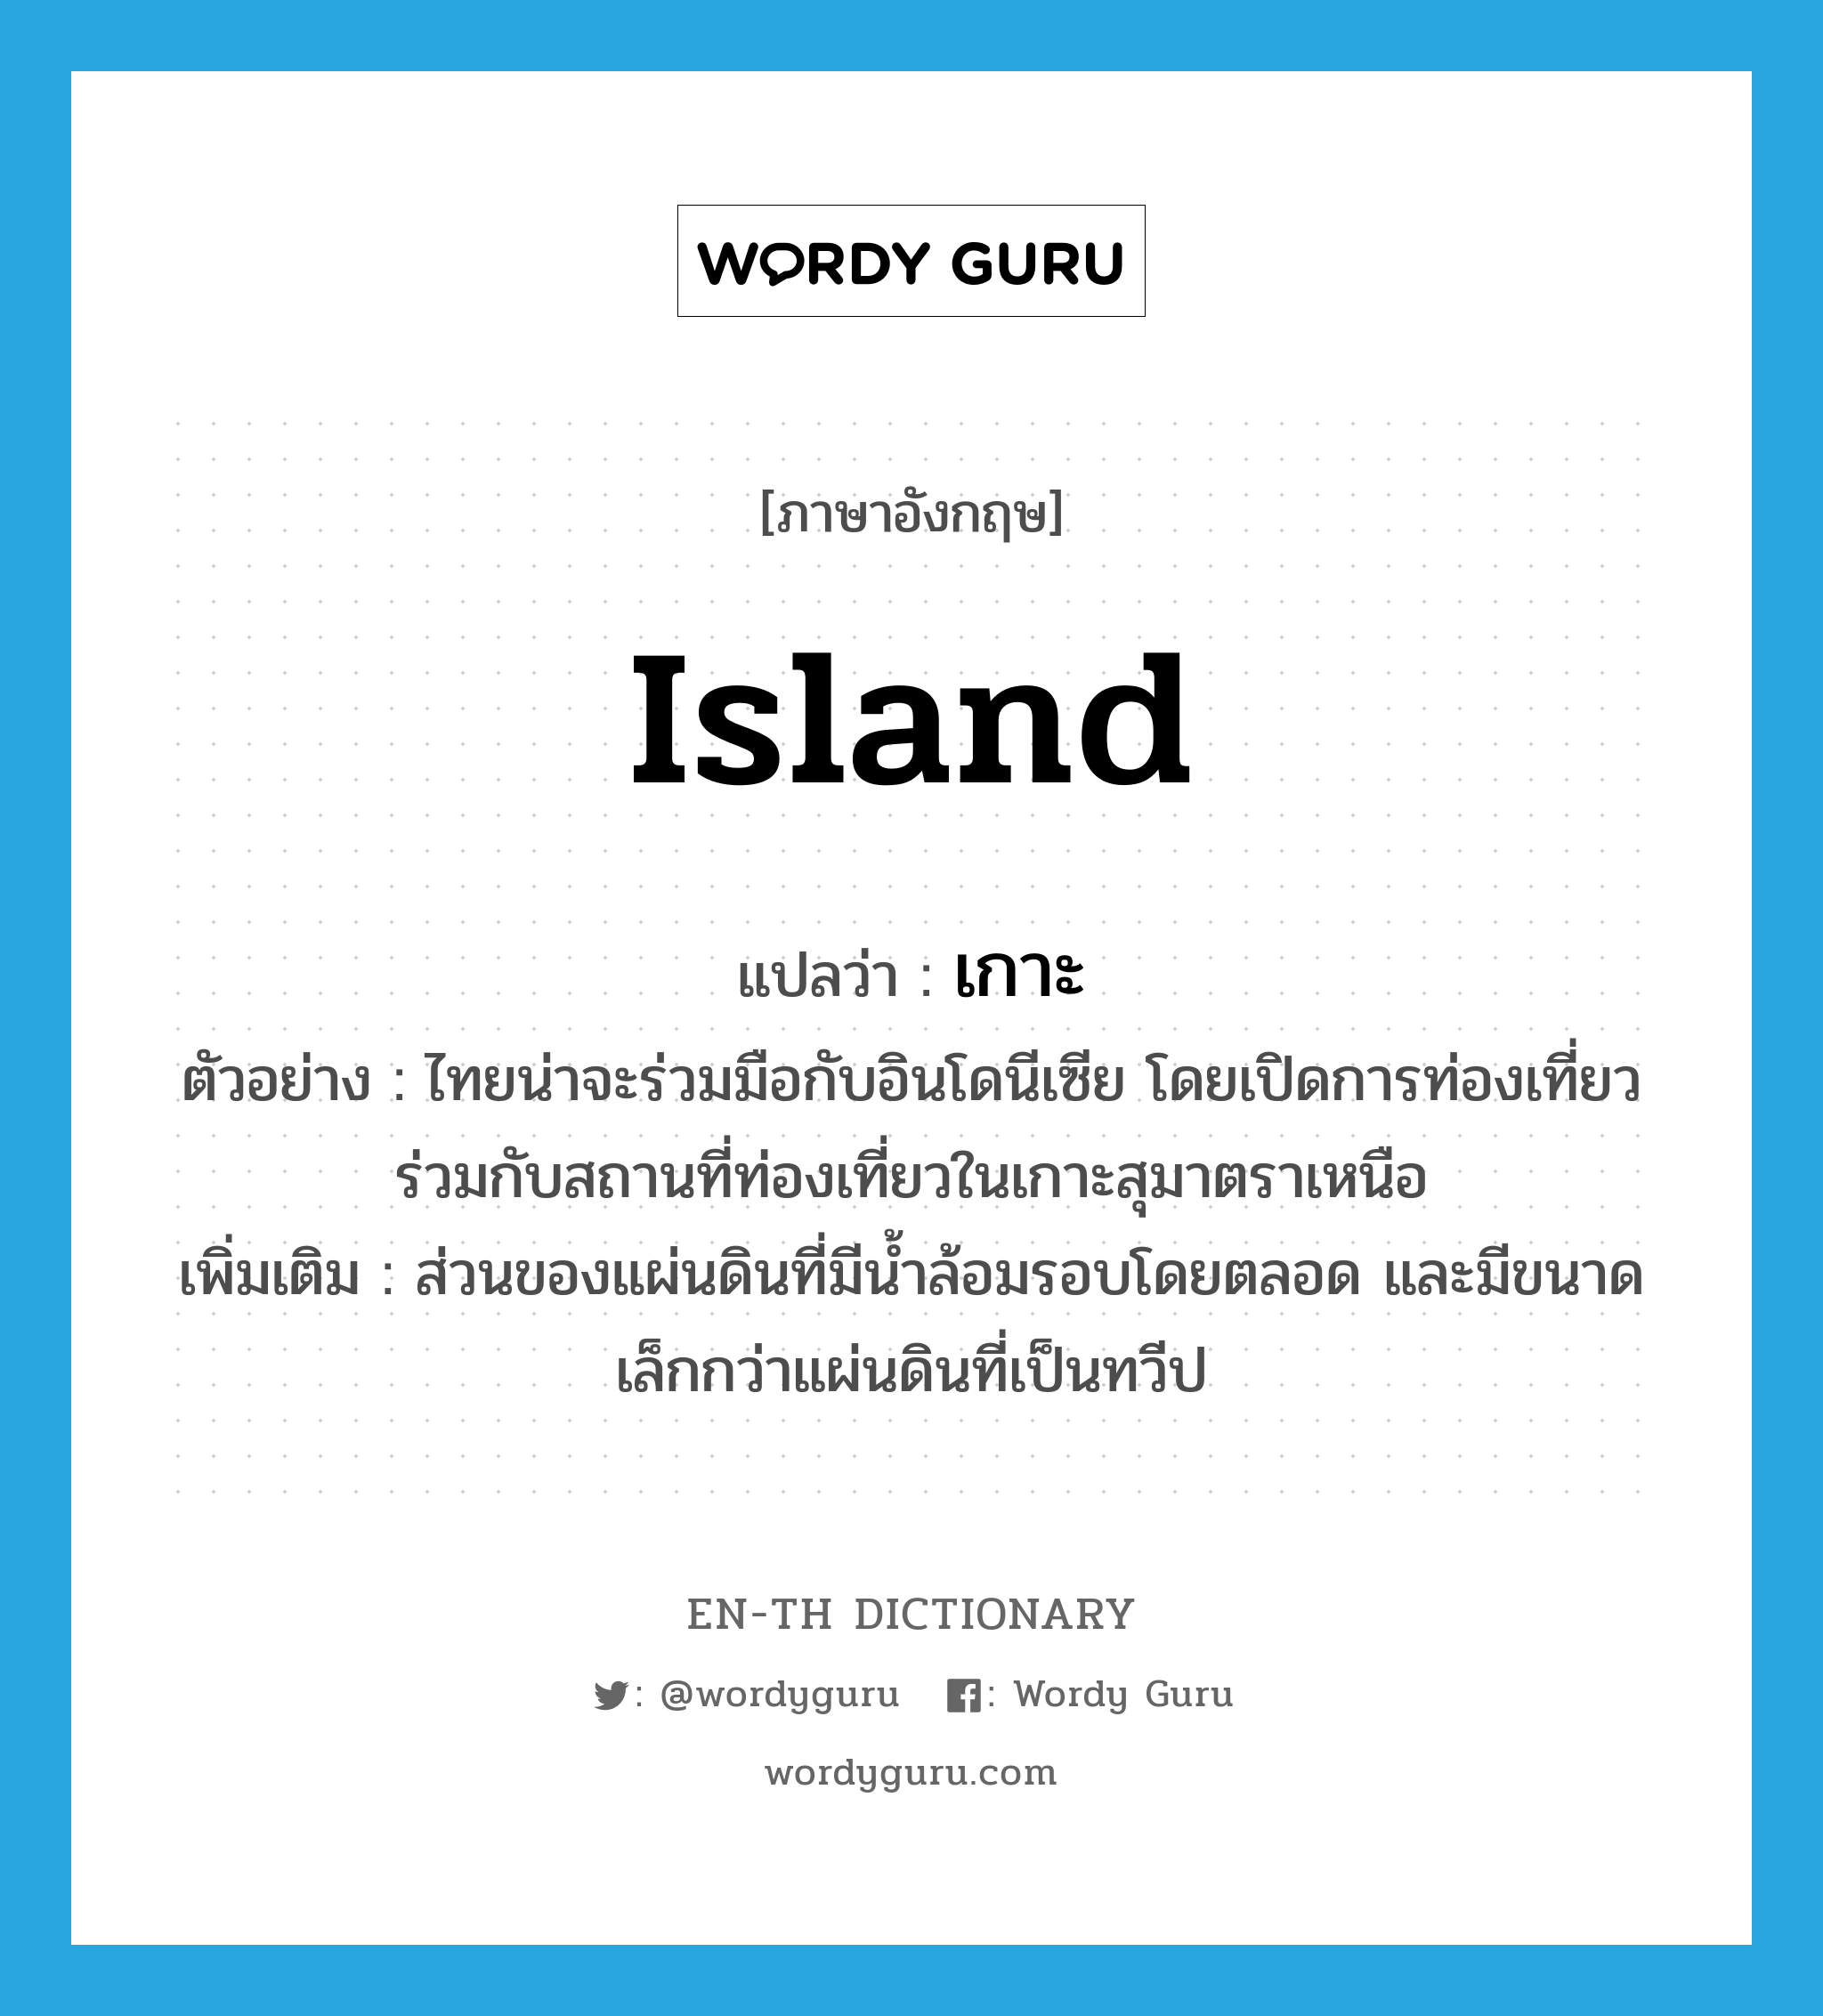 เกาะ ภาษาอังกฤษ?, คำศัพท์ภาษาอังกฤษ เกาะ แปลว่า island ประเภท N ตัวอย่าง ไทยน่าจะร่วมมือกับอินโดนีเซีย โดยเปิดการท่องเที่ยวร่วมกับสถานที่ท่องเที่ยวในเกาะสุมาตราเหนือ เพิ่มเติม ส่วนของแผ่นดินที่มีน้ำล้อมรอบโดยตลอด และมีขนาดเล็กกว่าแผ่นดินที่เป็นทวีป หมวด N